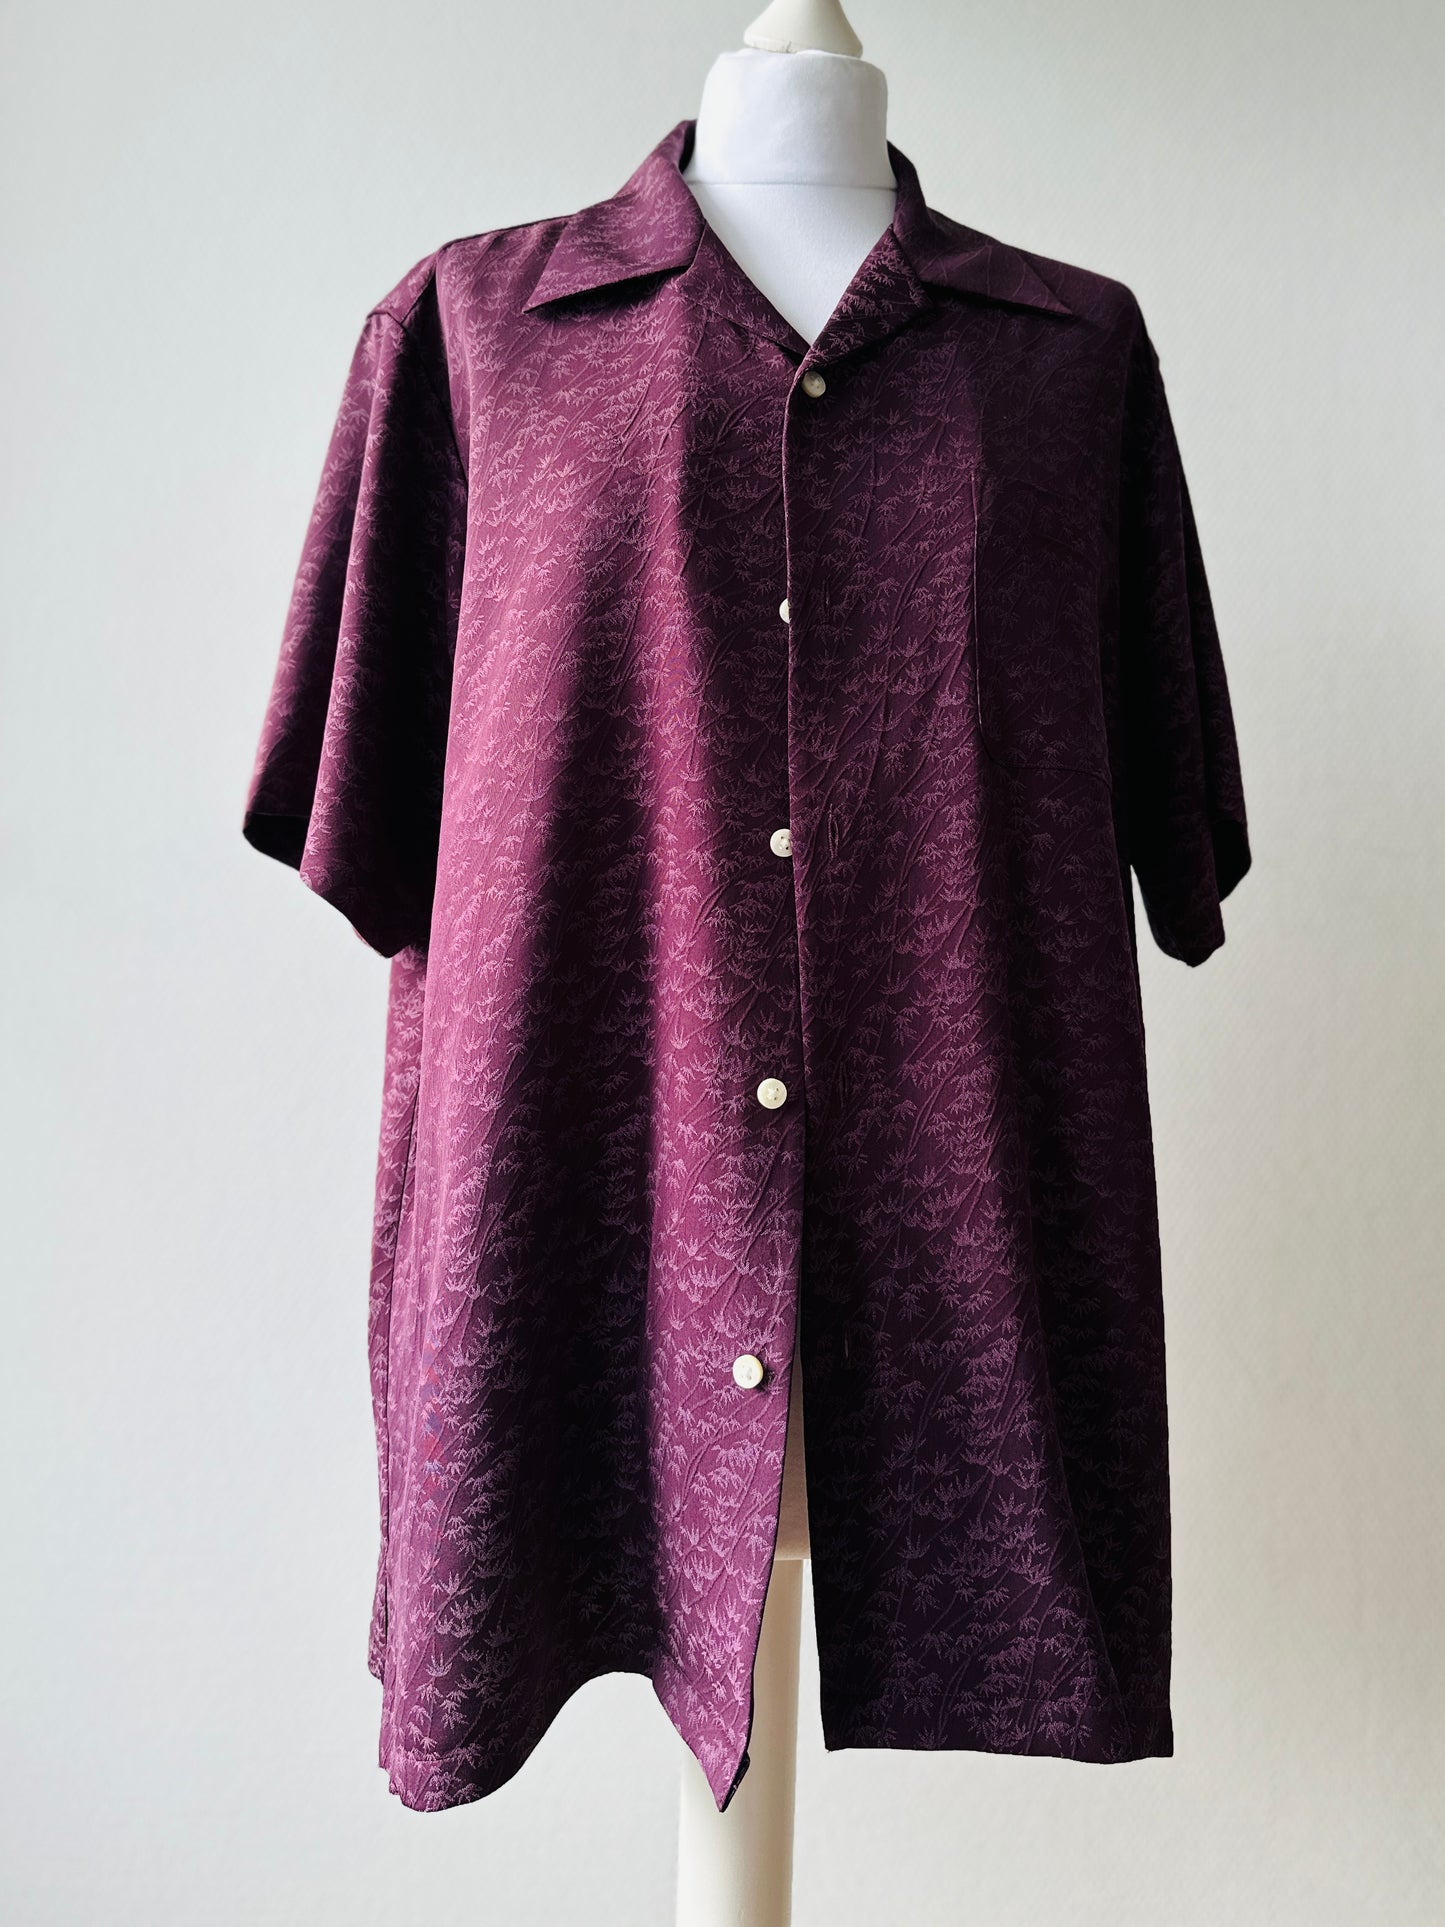 【Purple, Banbooo】 Shirt / Taille hawaïen: L ＜ Nouveau ・ Silk ＞ pour les hommes, pour les femmes, le kimono japonais, les vêtements unisexes du Japon, l'unisexe, les cadeaux japonais, l'article original